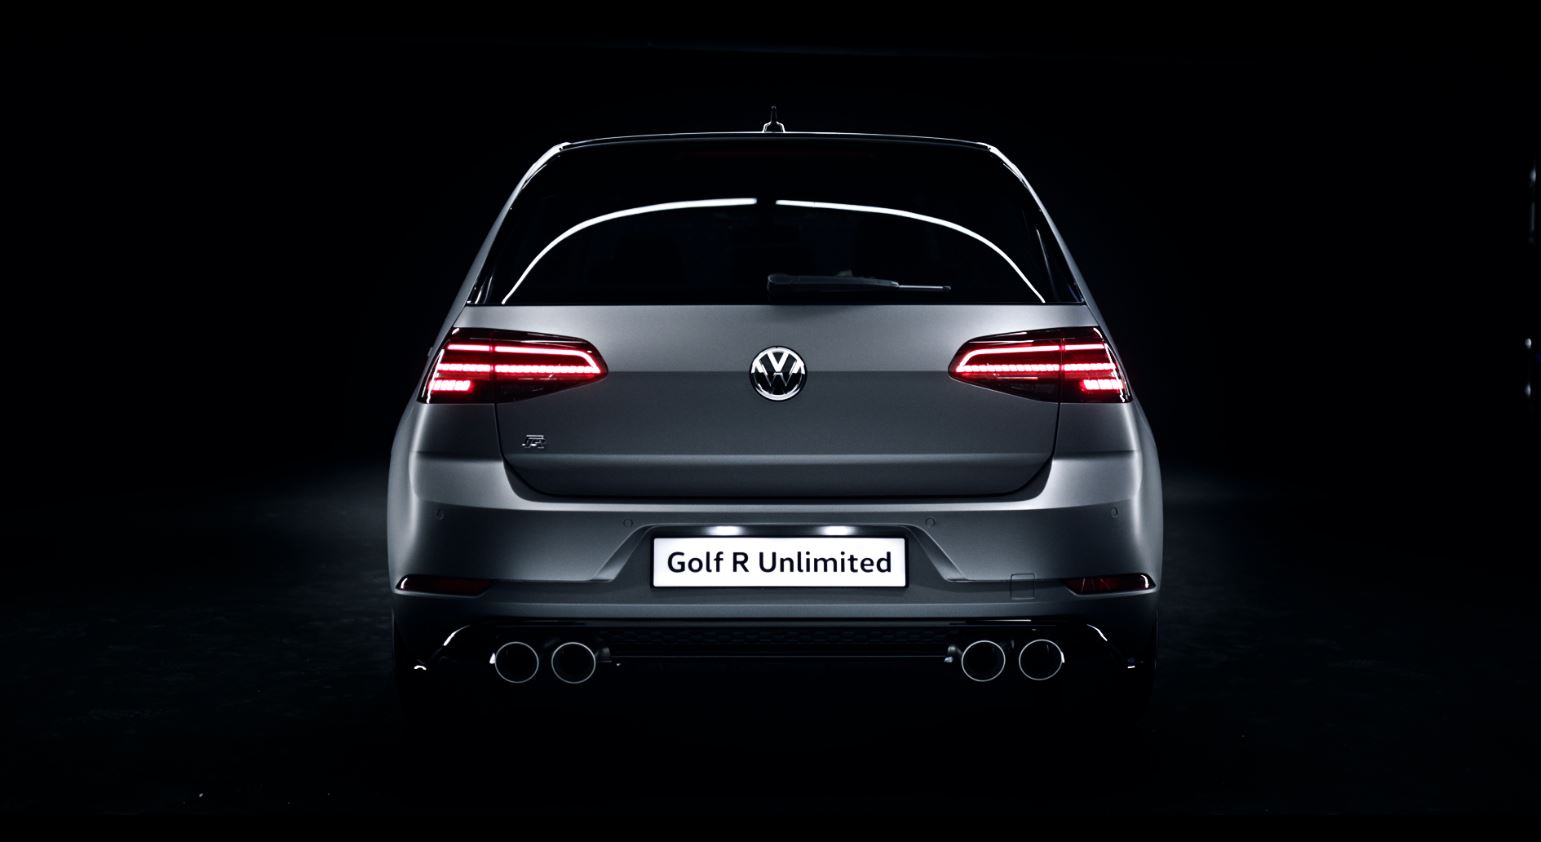 ¿Querías el Volkswagen Golf R Unlimited? Malas noticias, ya se ha agotado